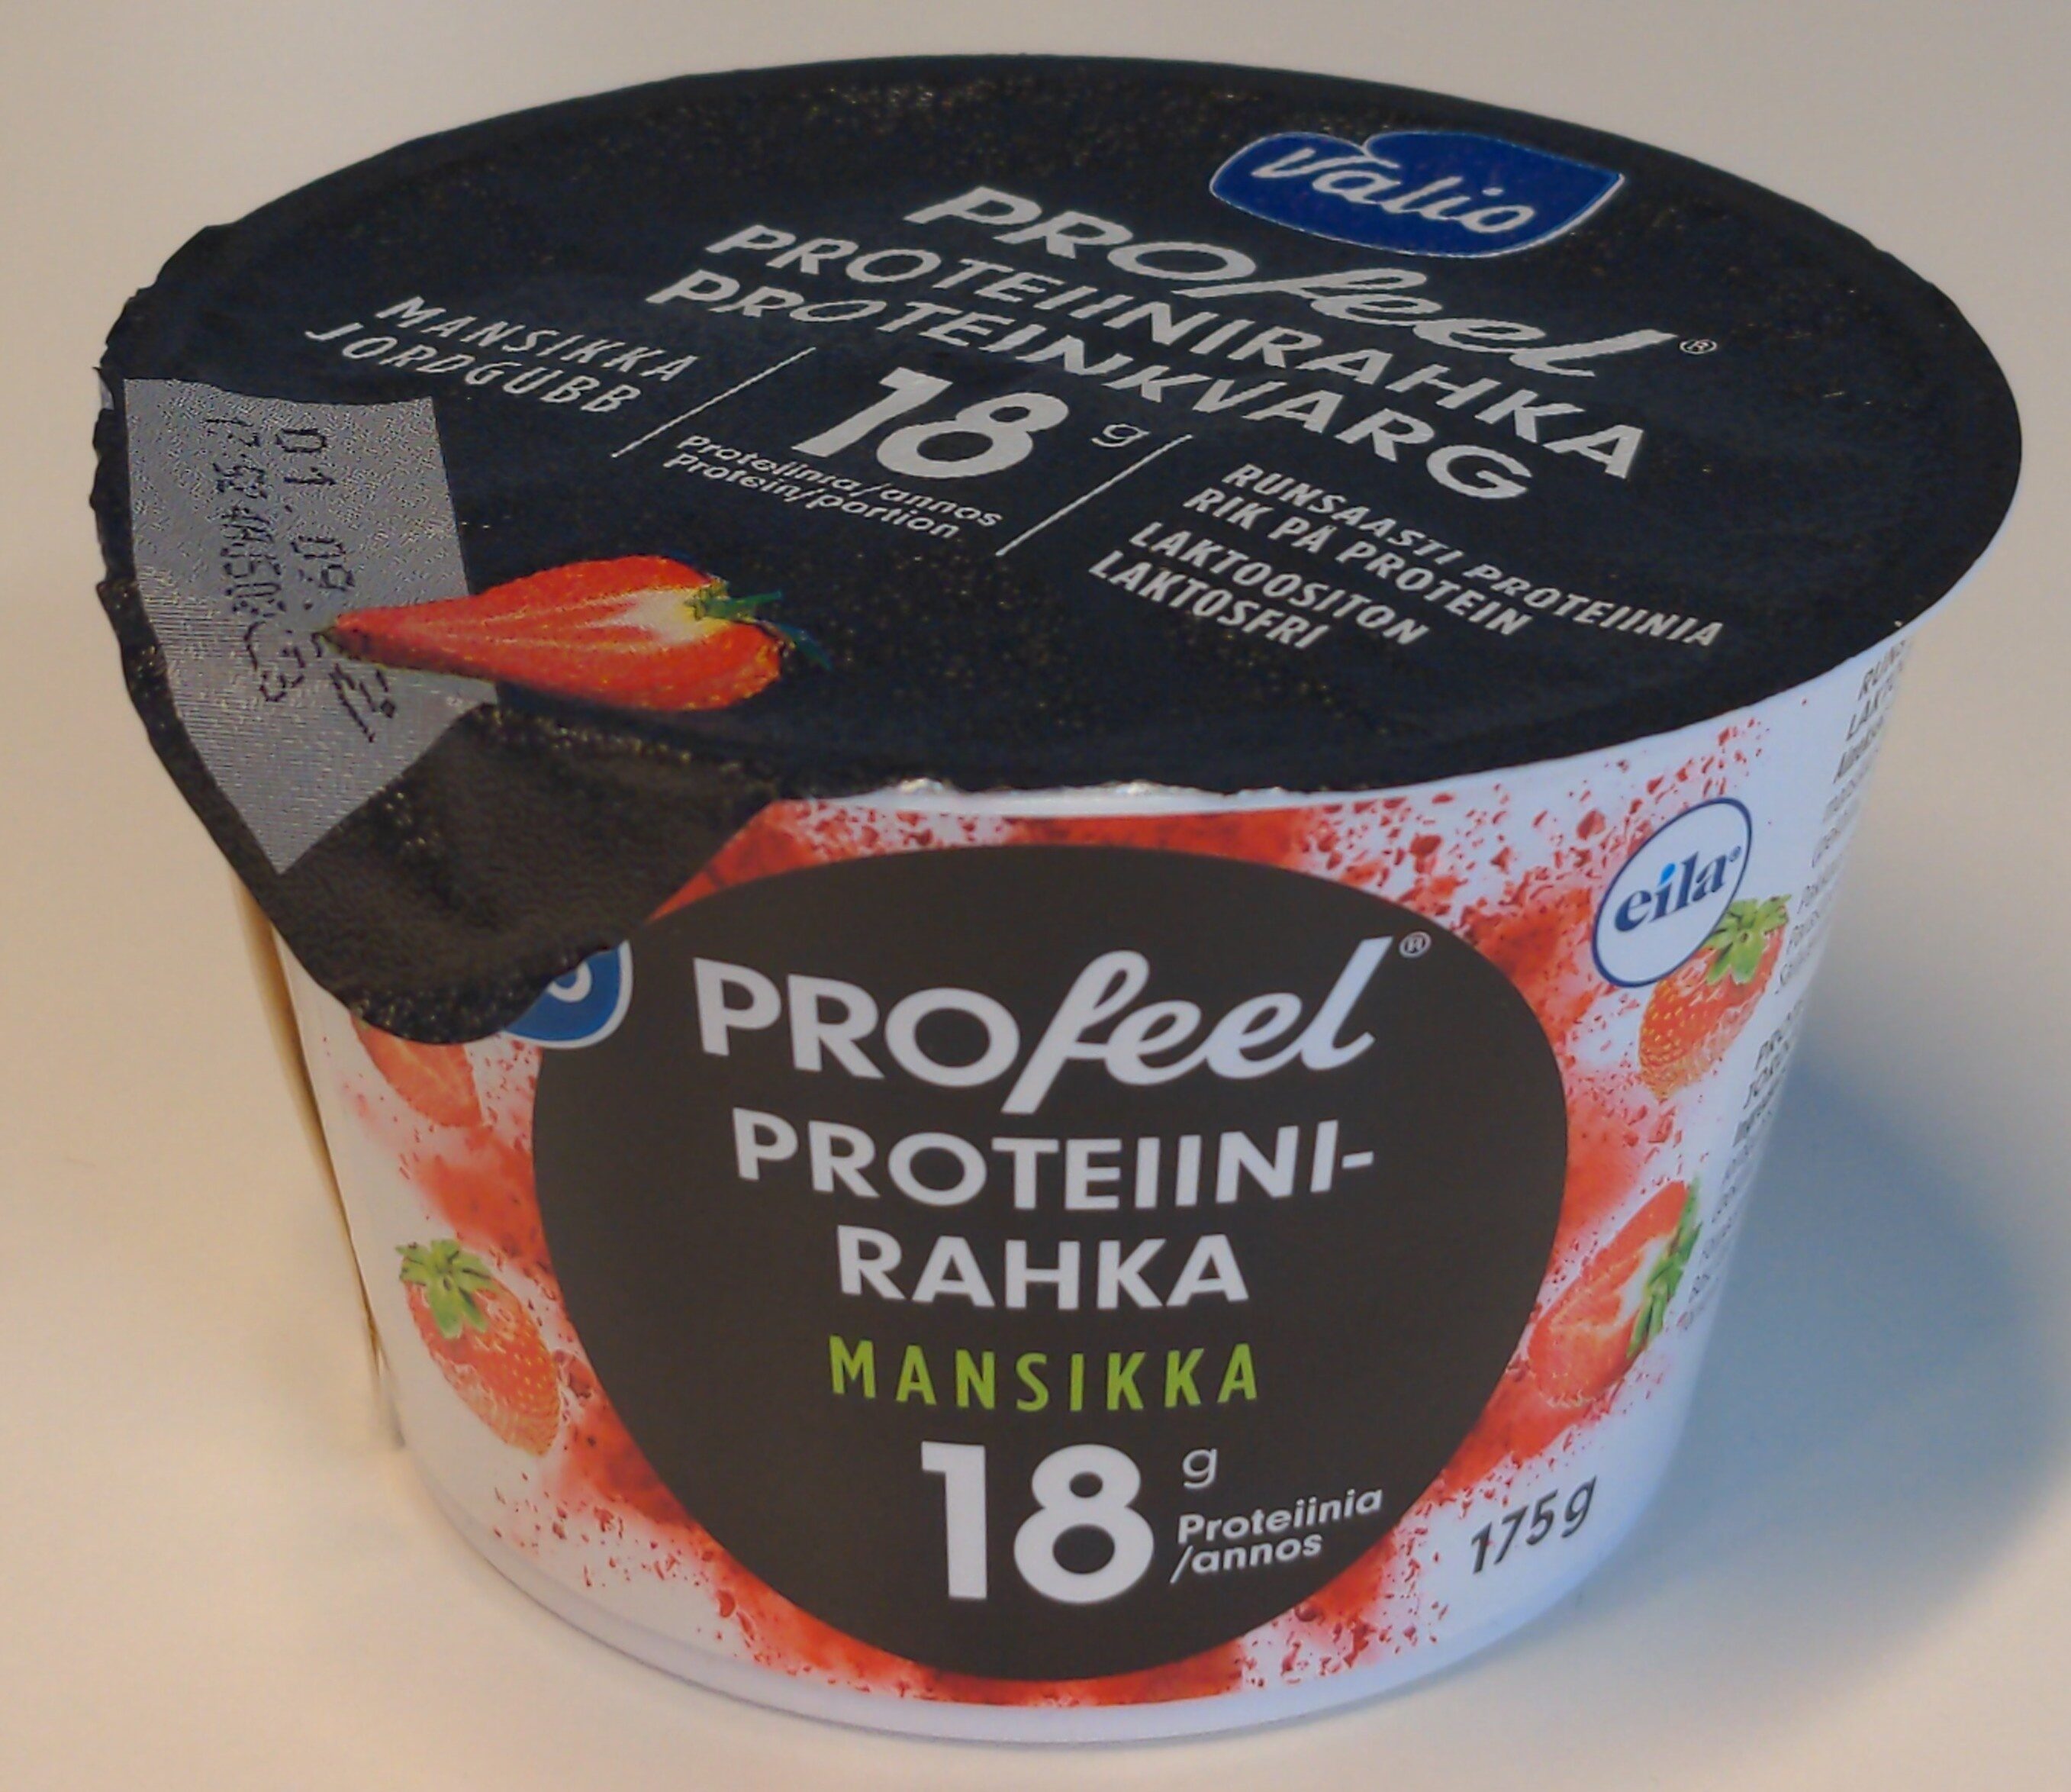 PROfeel proteiinirahka mansikka - Tuote